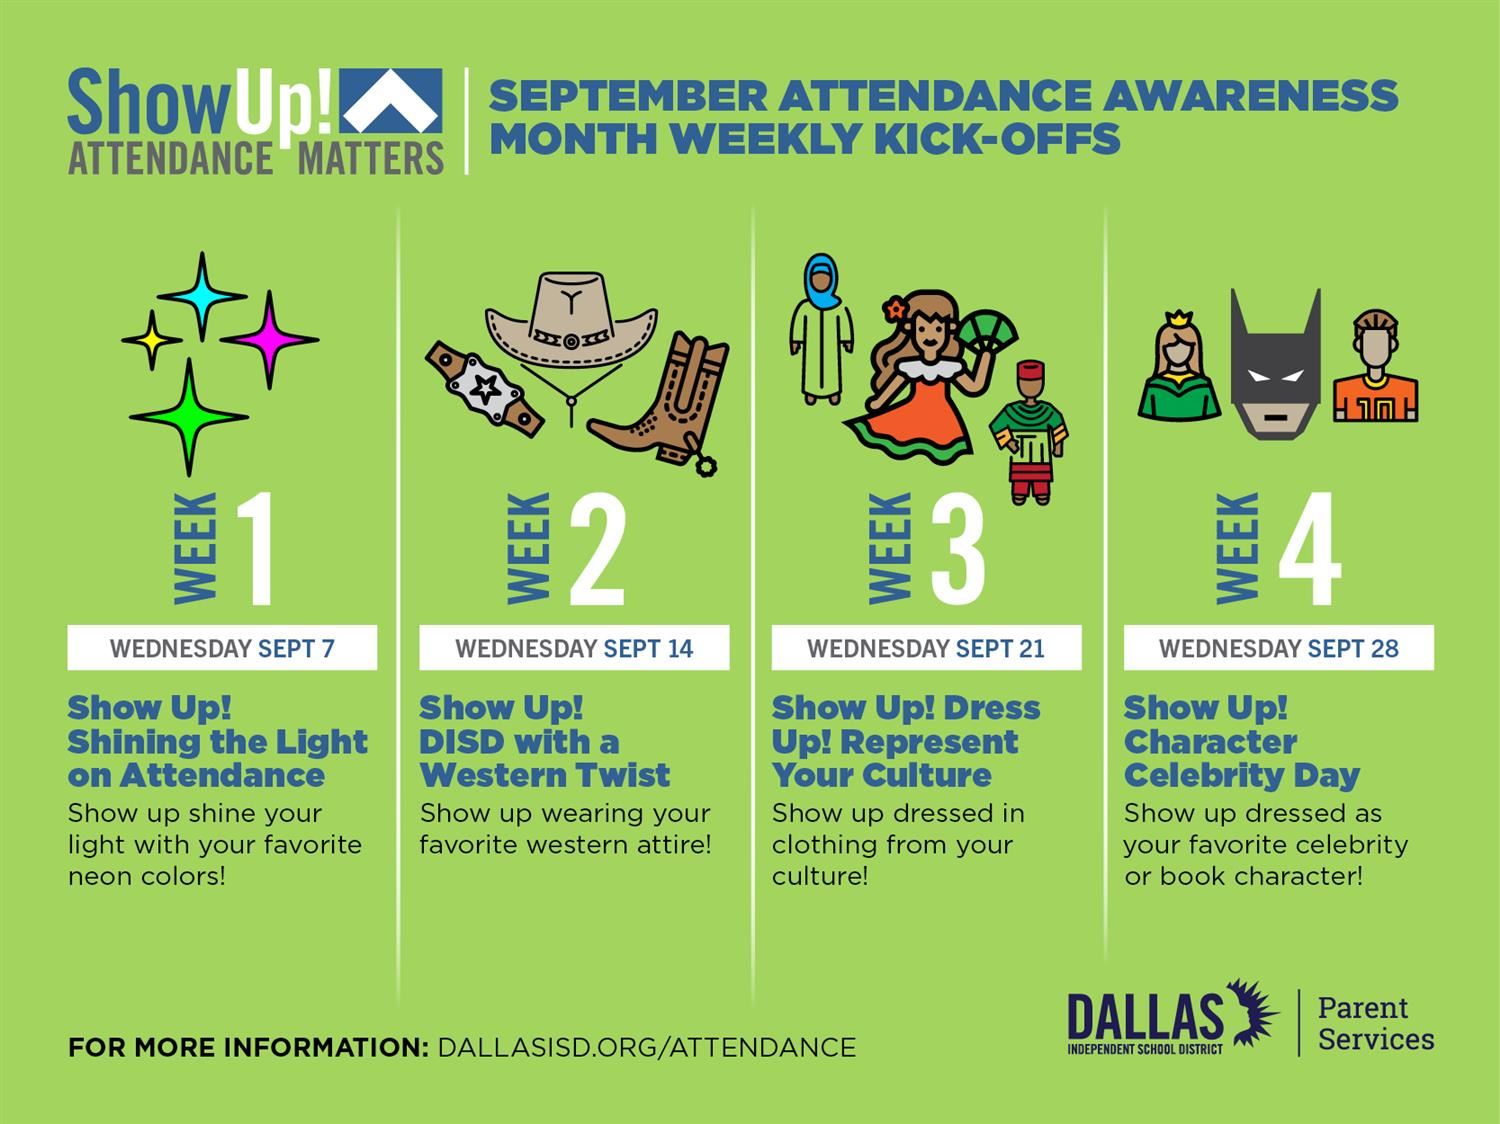   September Attendance Awareness Month